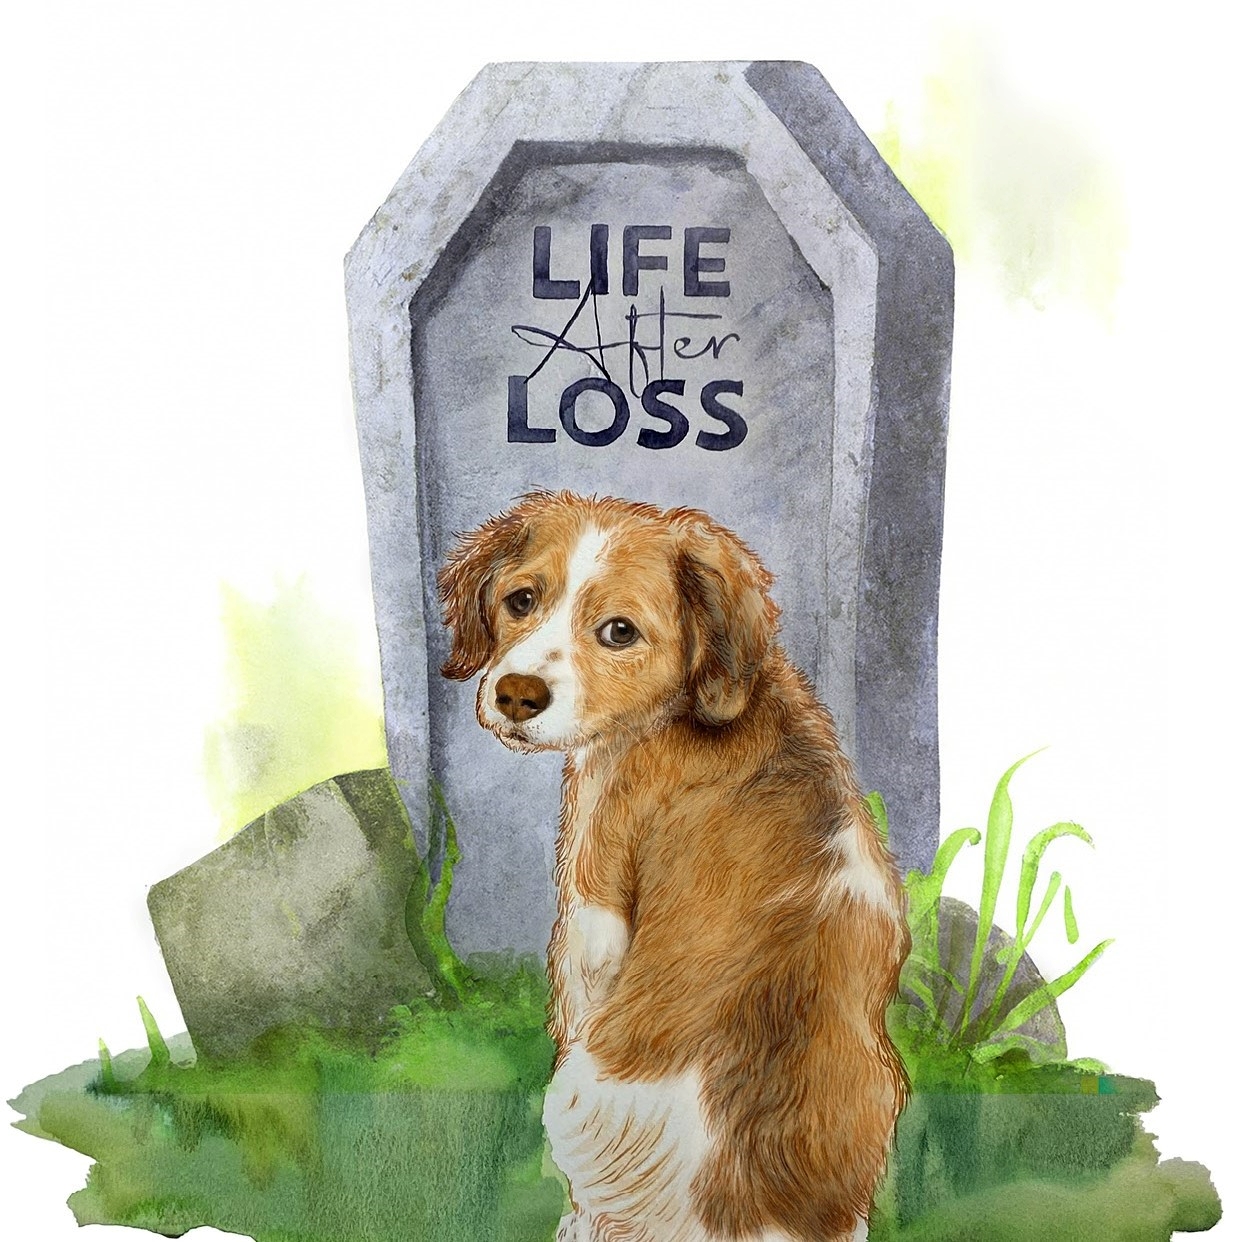 Dog sitting next to a gravestone